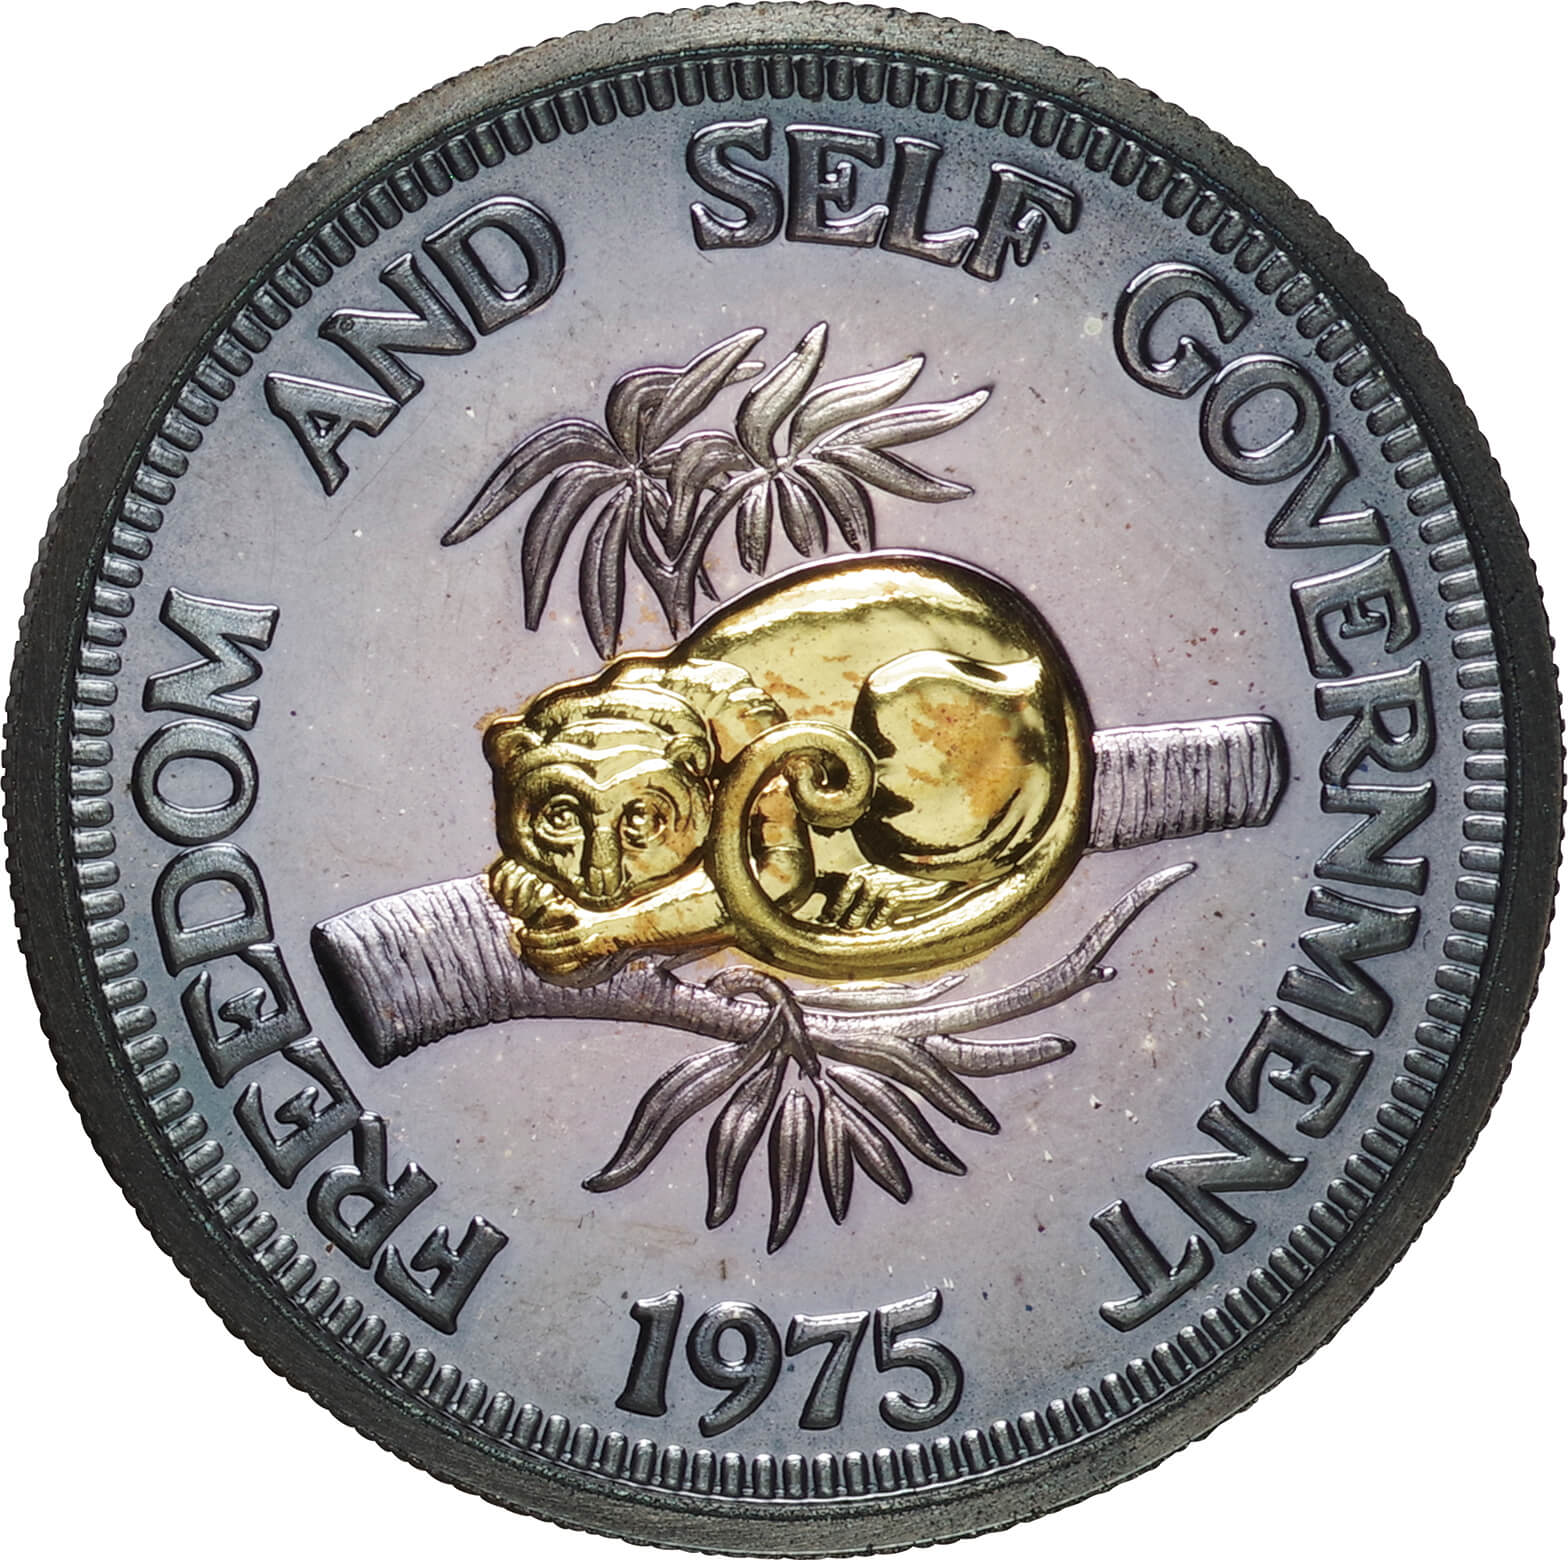 ソロモン諸島-Solomon Islands. 1975. Silver. 30ドル. プルーフ